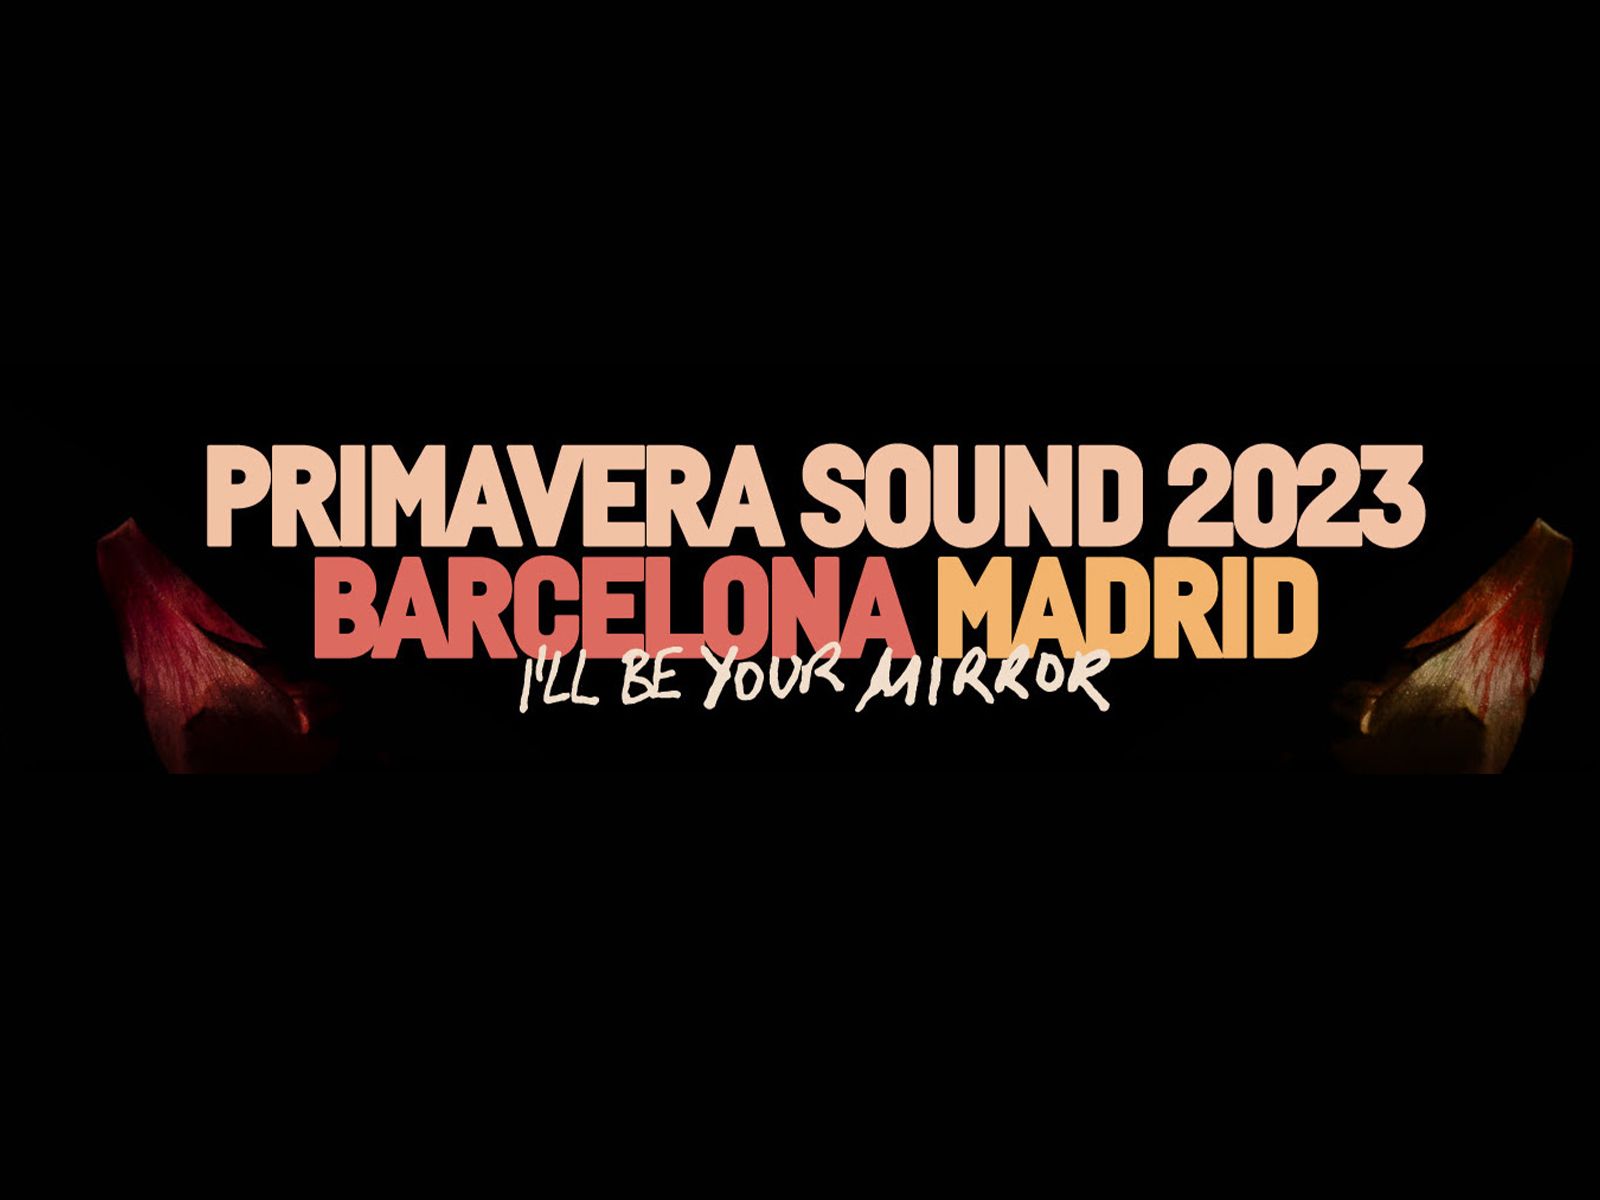 Primavera Sound desvela su cartel para la edición de 2023 en Barcelona y Madrid